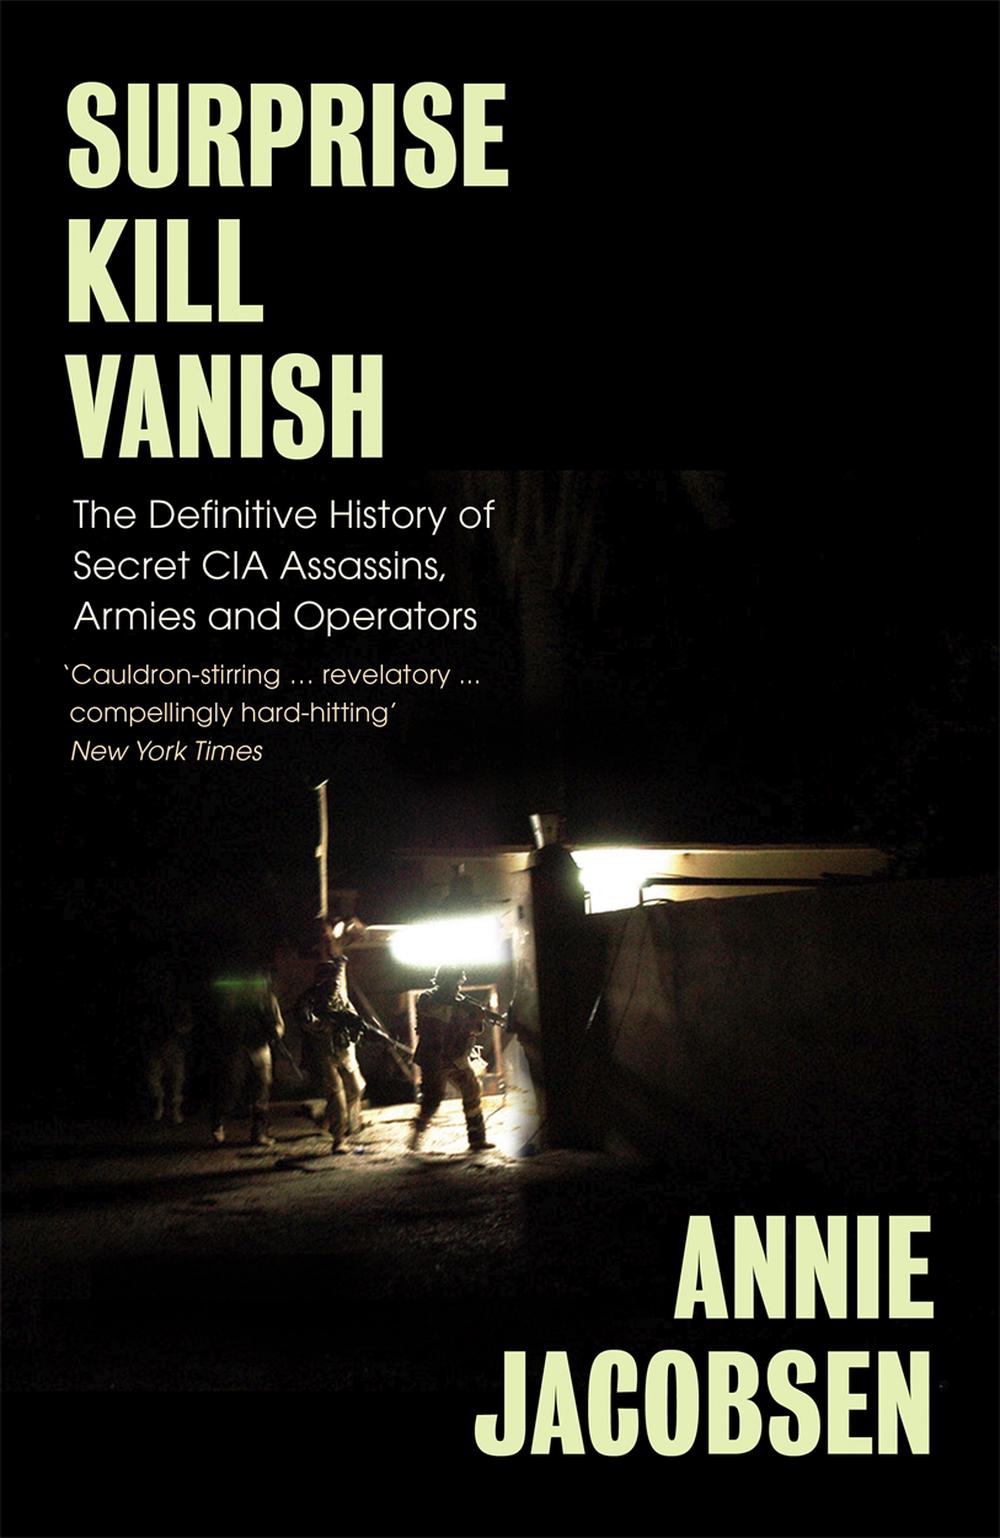 Surprise, Kill, Vanish by Annie Jacobsen